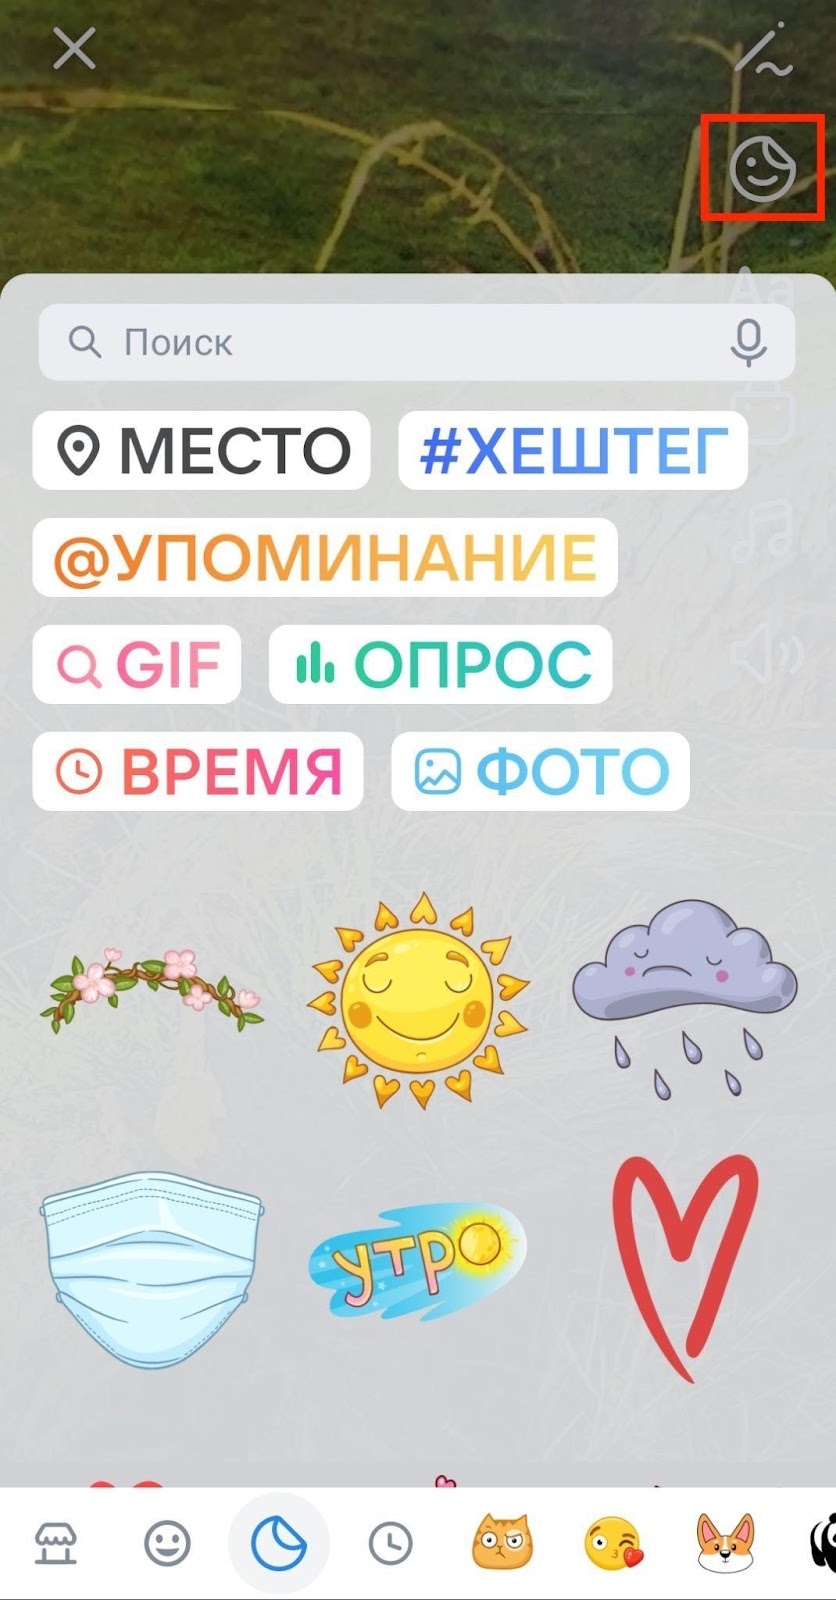 Клипы ВКонтакте: инструкция по созданию